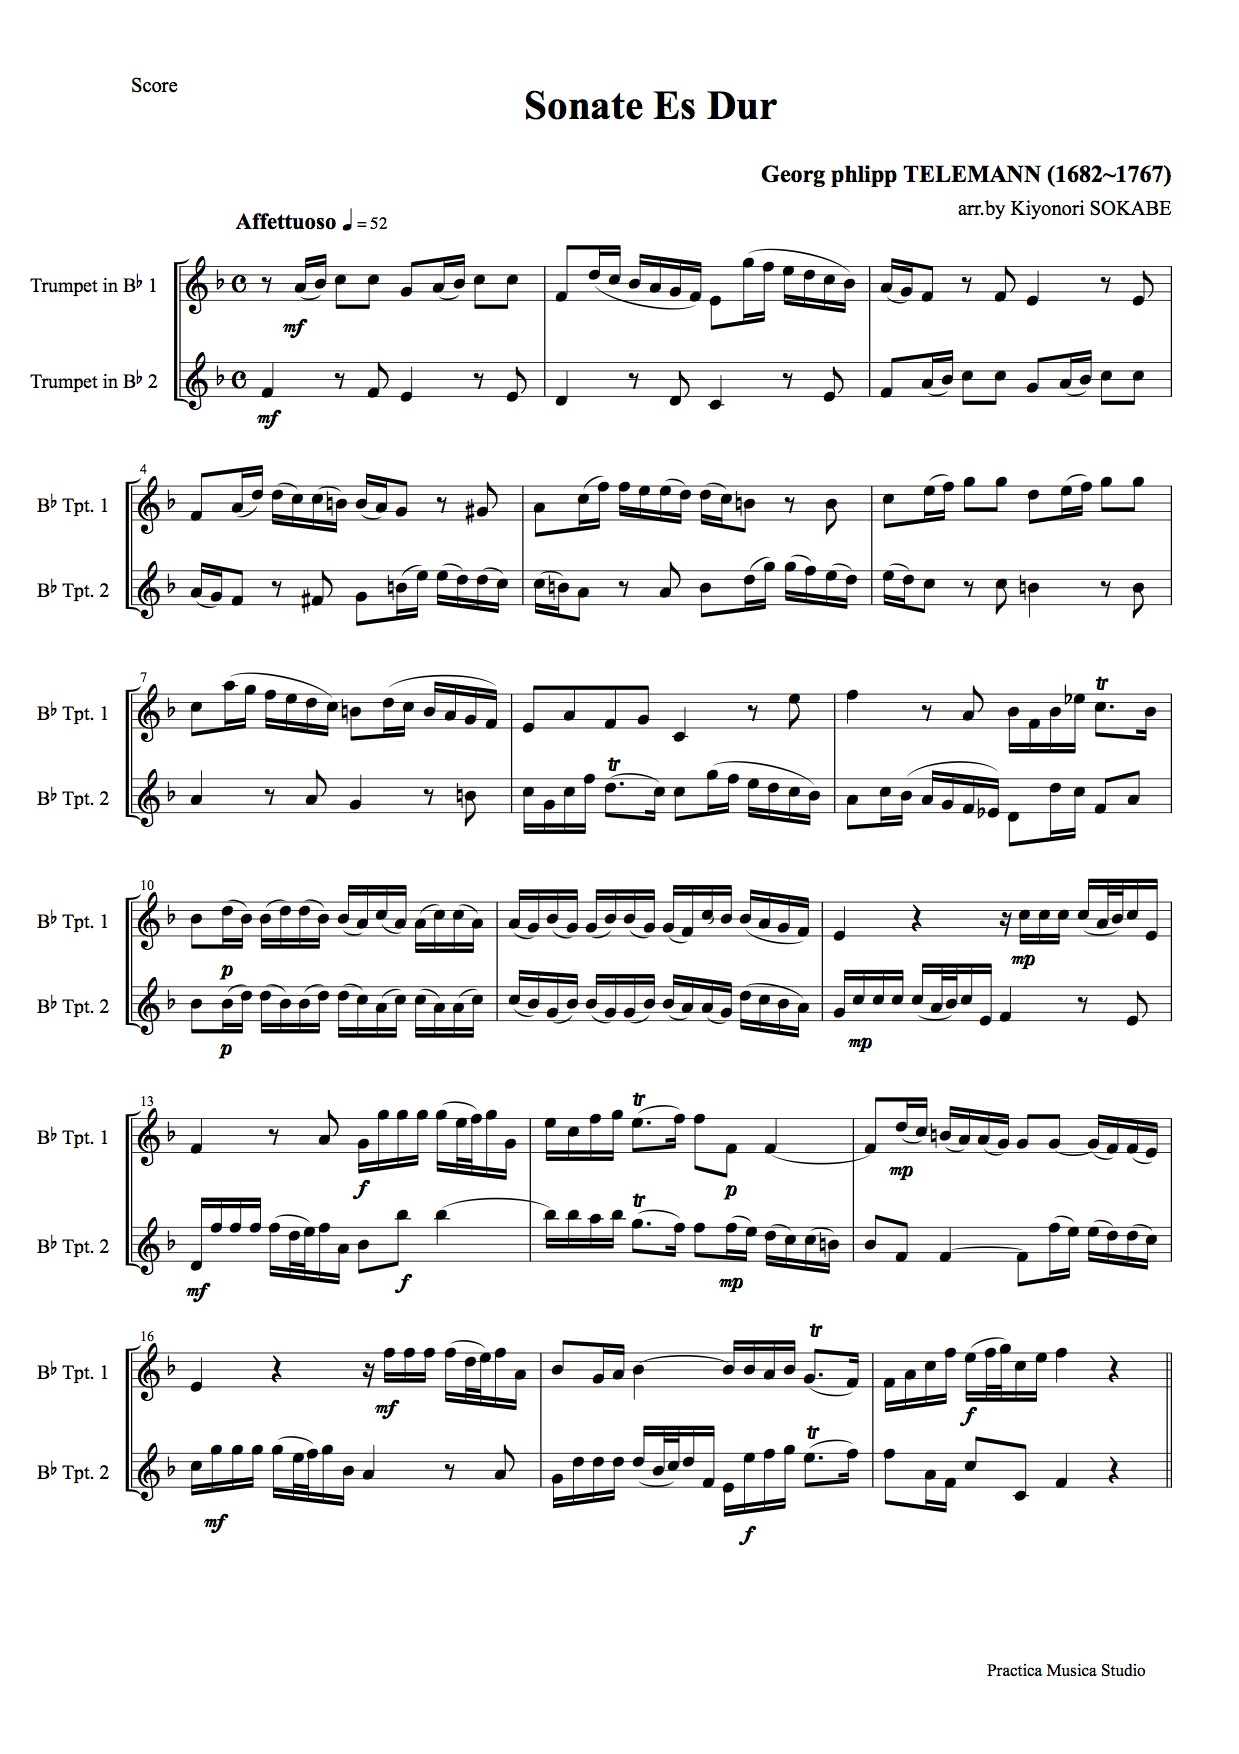 変ホ長調のソナタ (テレマン) 管楽 - 二重奏 | 現代日本の音楽の楽譜 | SOKABE Music Publishing